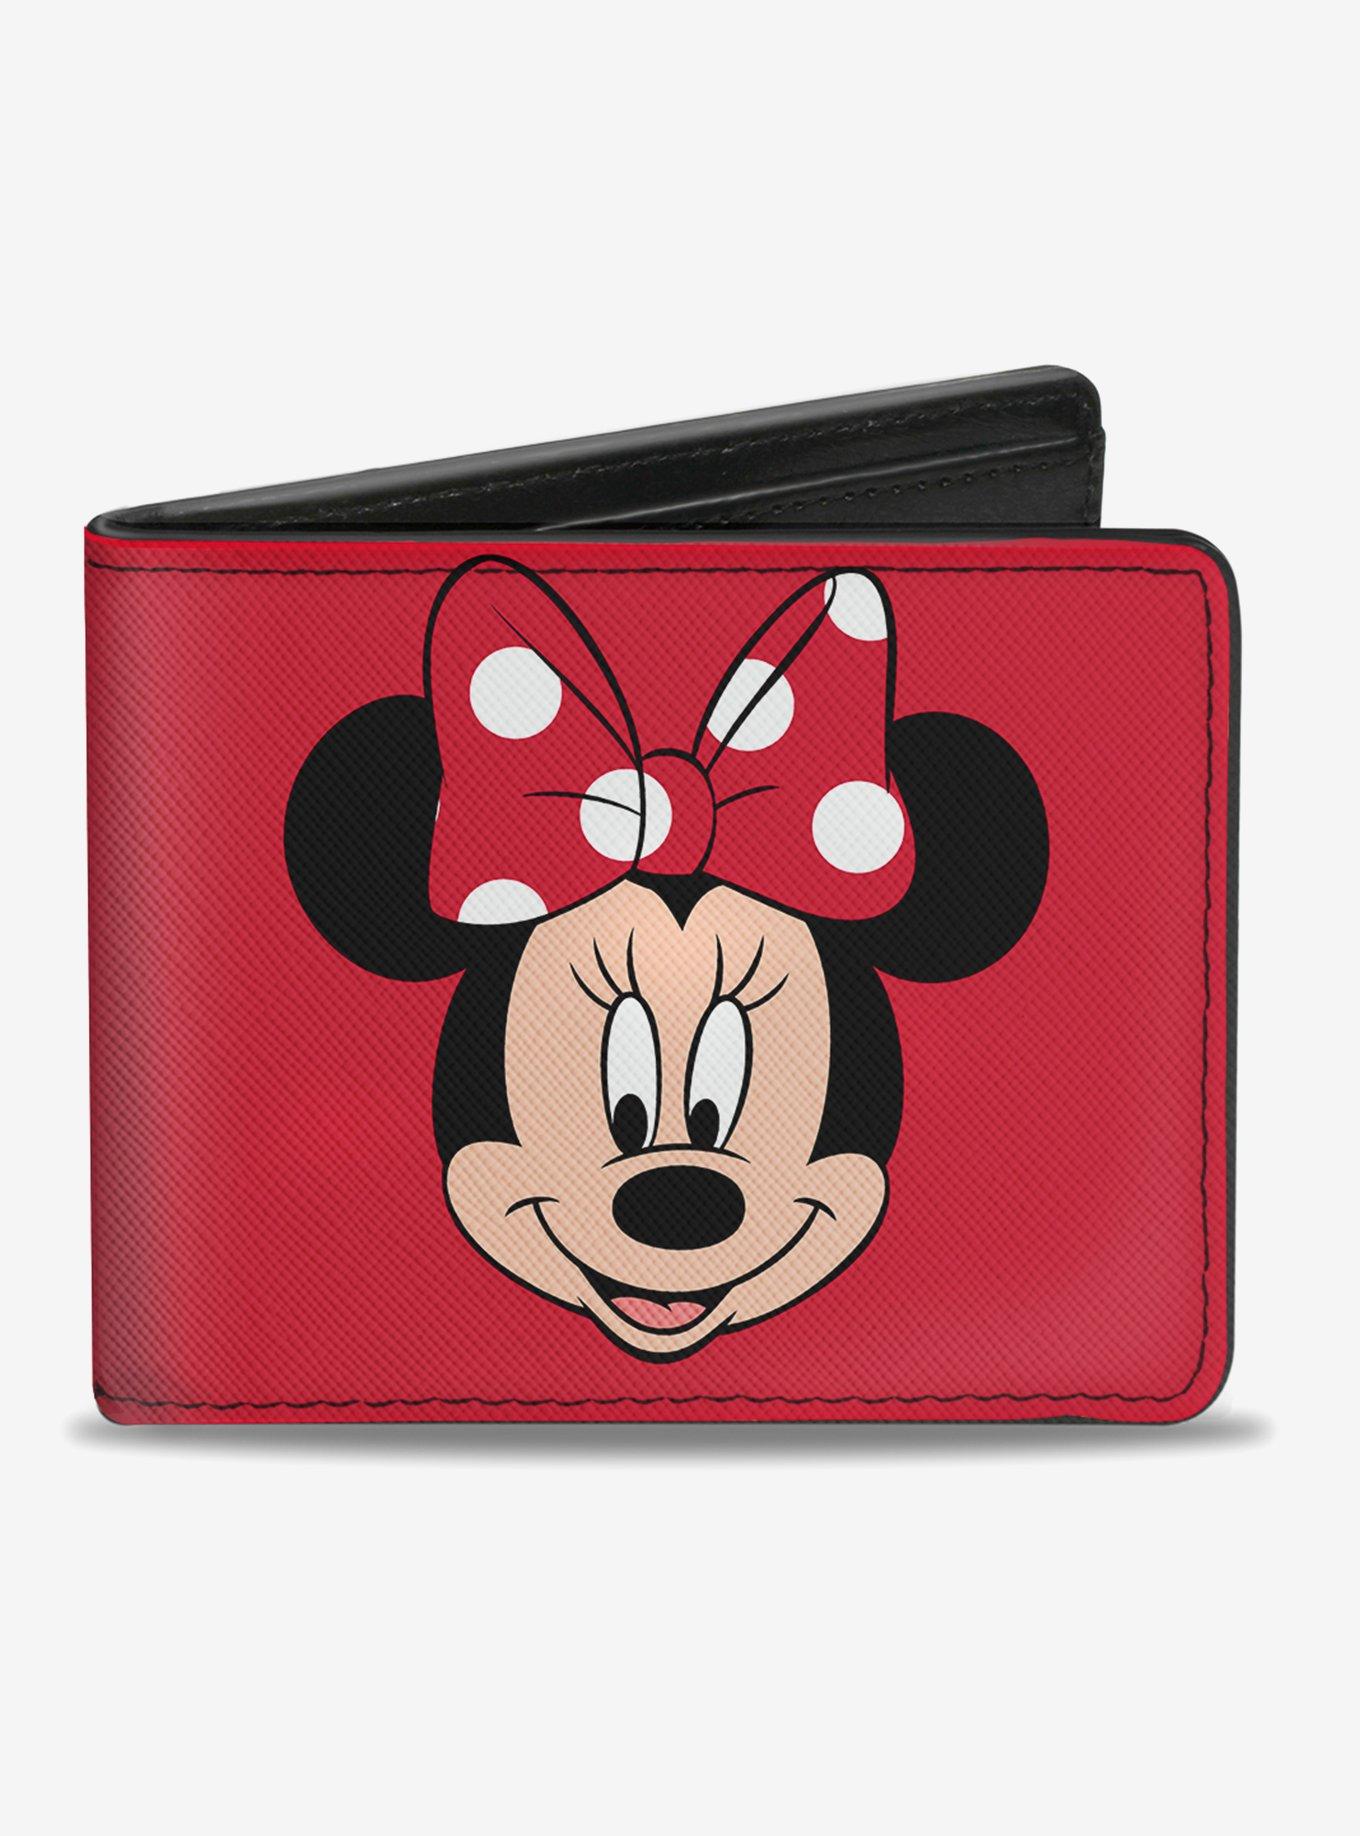 Disney Minnie Mouse Face Script Polka Dots Bi-Fold Wallet, , hi-res